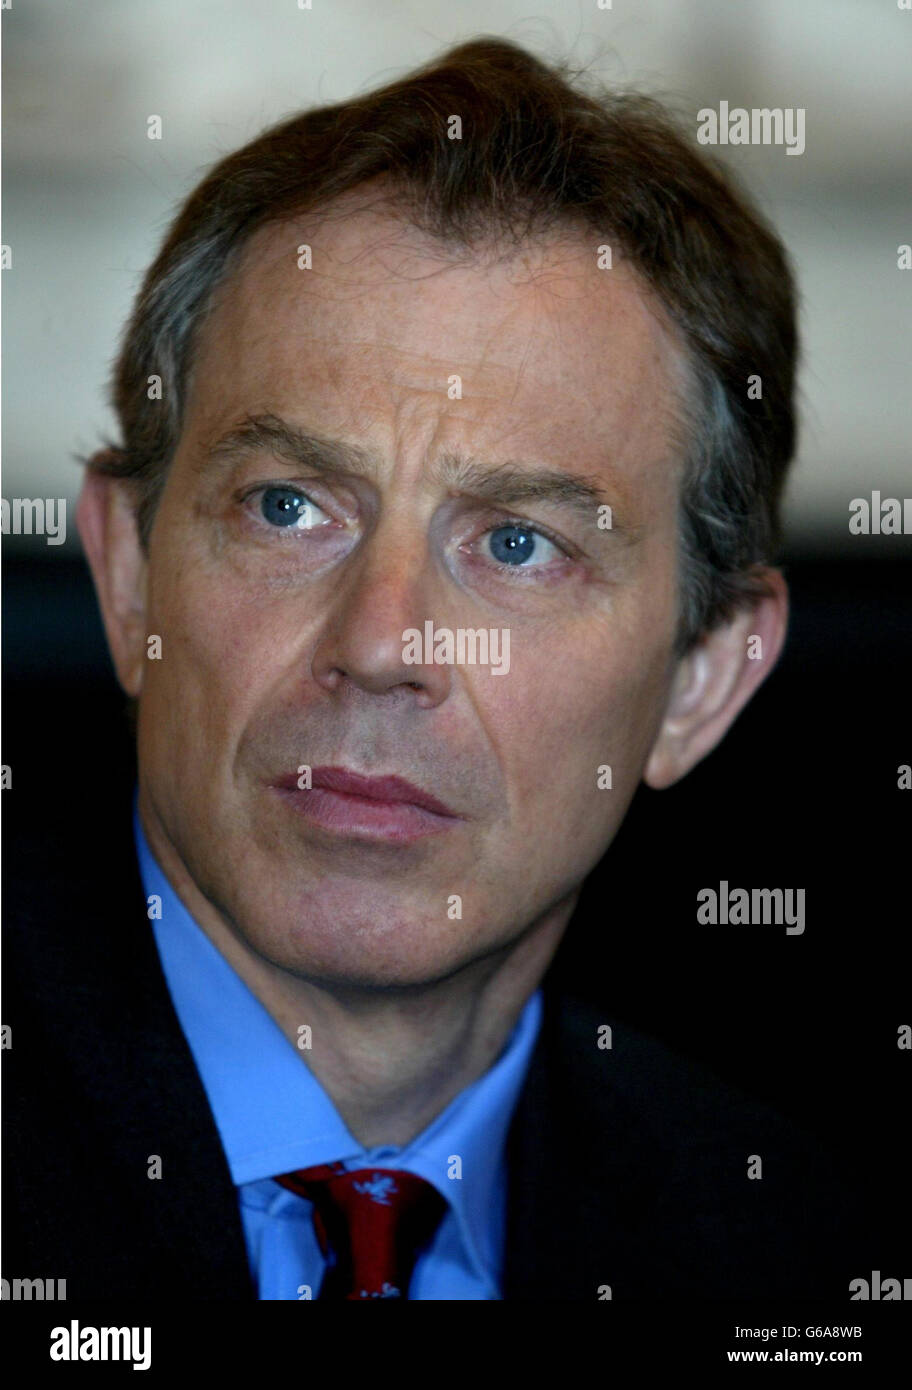 Premierminister Tony Blair hört den im Exil lebenden Irakern zu, die über ihr Leben unter Sadam Hussein sprechen. Die Iraker wurden in die Dowing Street Nr. 10 eingeladen, um über die Zukunft ihres Landes zu diskutieren. * Inzwischen wurde im Irak eine Botschaft von Premierminister Tony Blair, die ein freies und friedliches Nachkriegsland versprach, als Flugblatt von britischen Truppen im Irak verteilt. Stockfoto